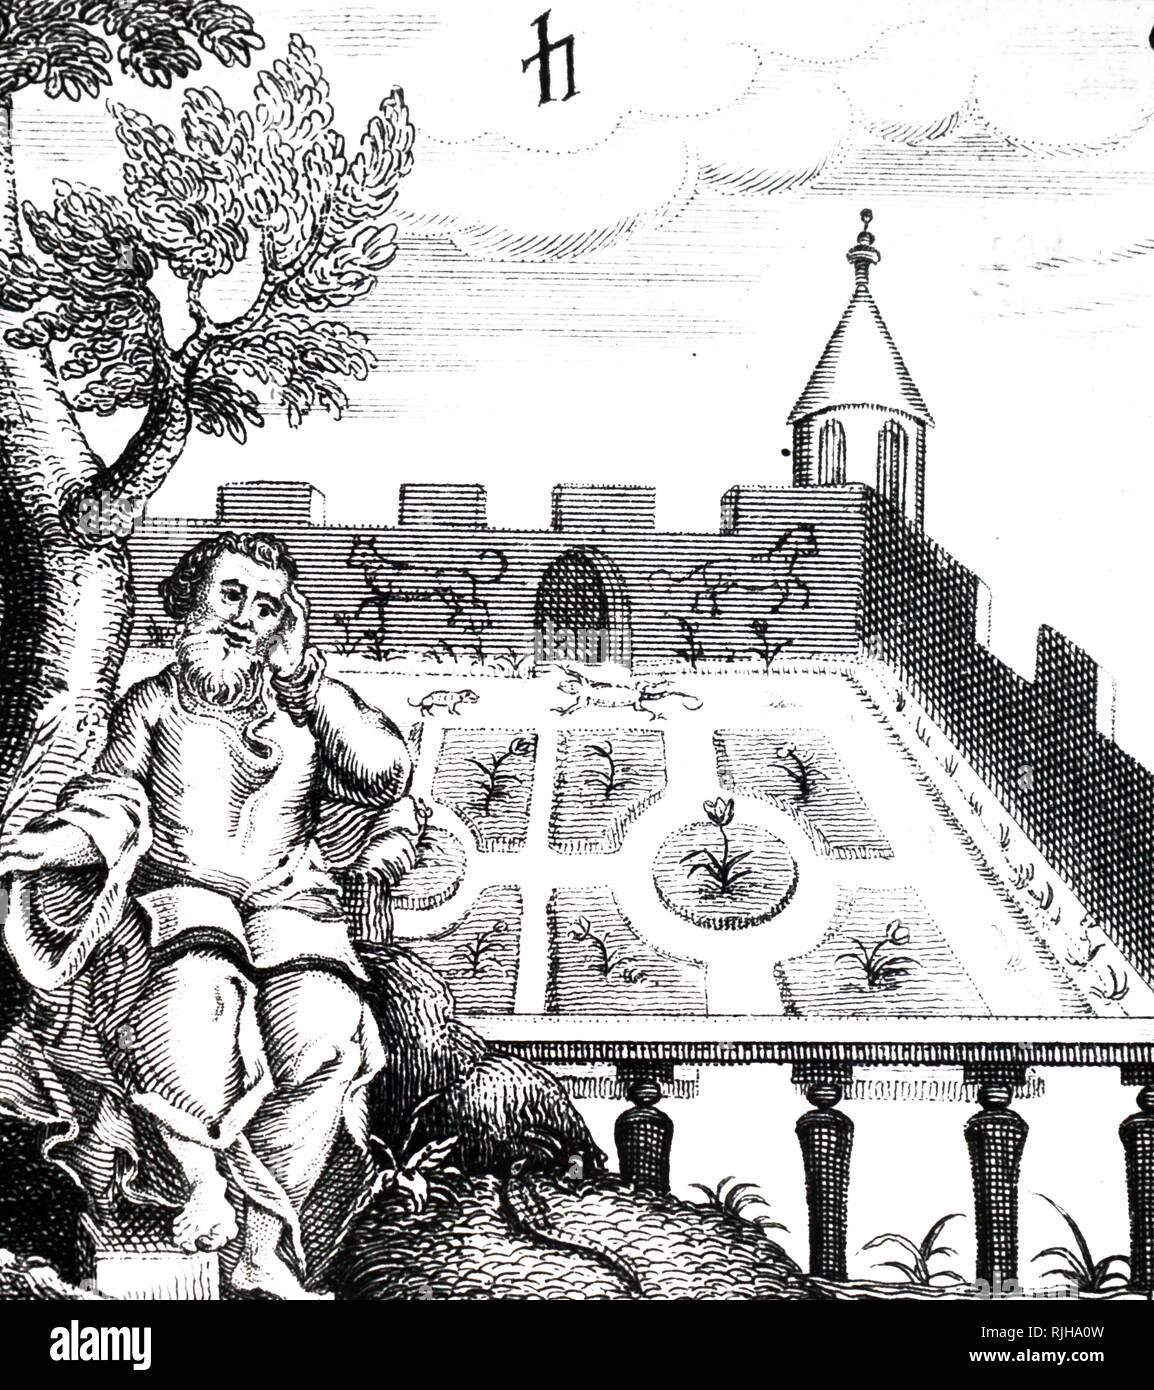 Une gravure sur bois représentant un jardin clos avec gazebo. Un détail du frontispice de Robert Burton, c'est 'l'anatomie de la mélancolie", publié initialement en 1621. En date du 19e siècle Banque D'Images